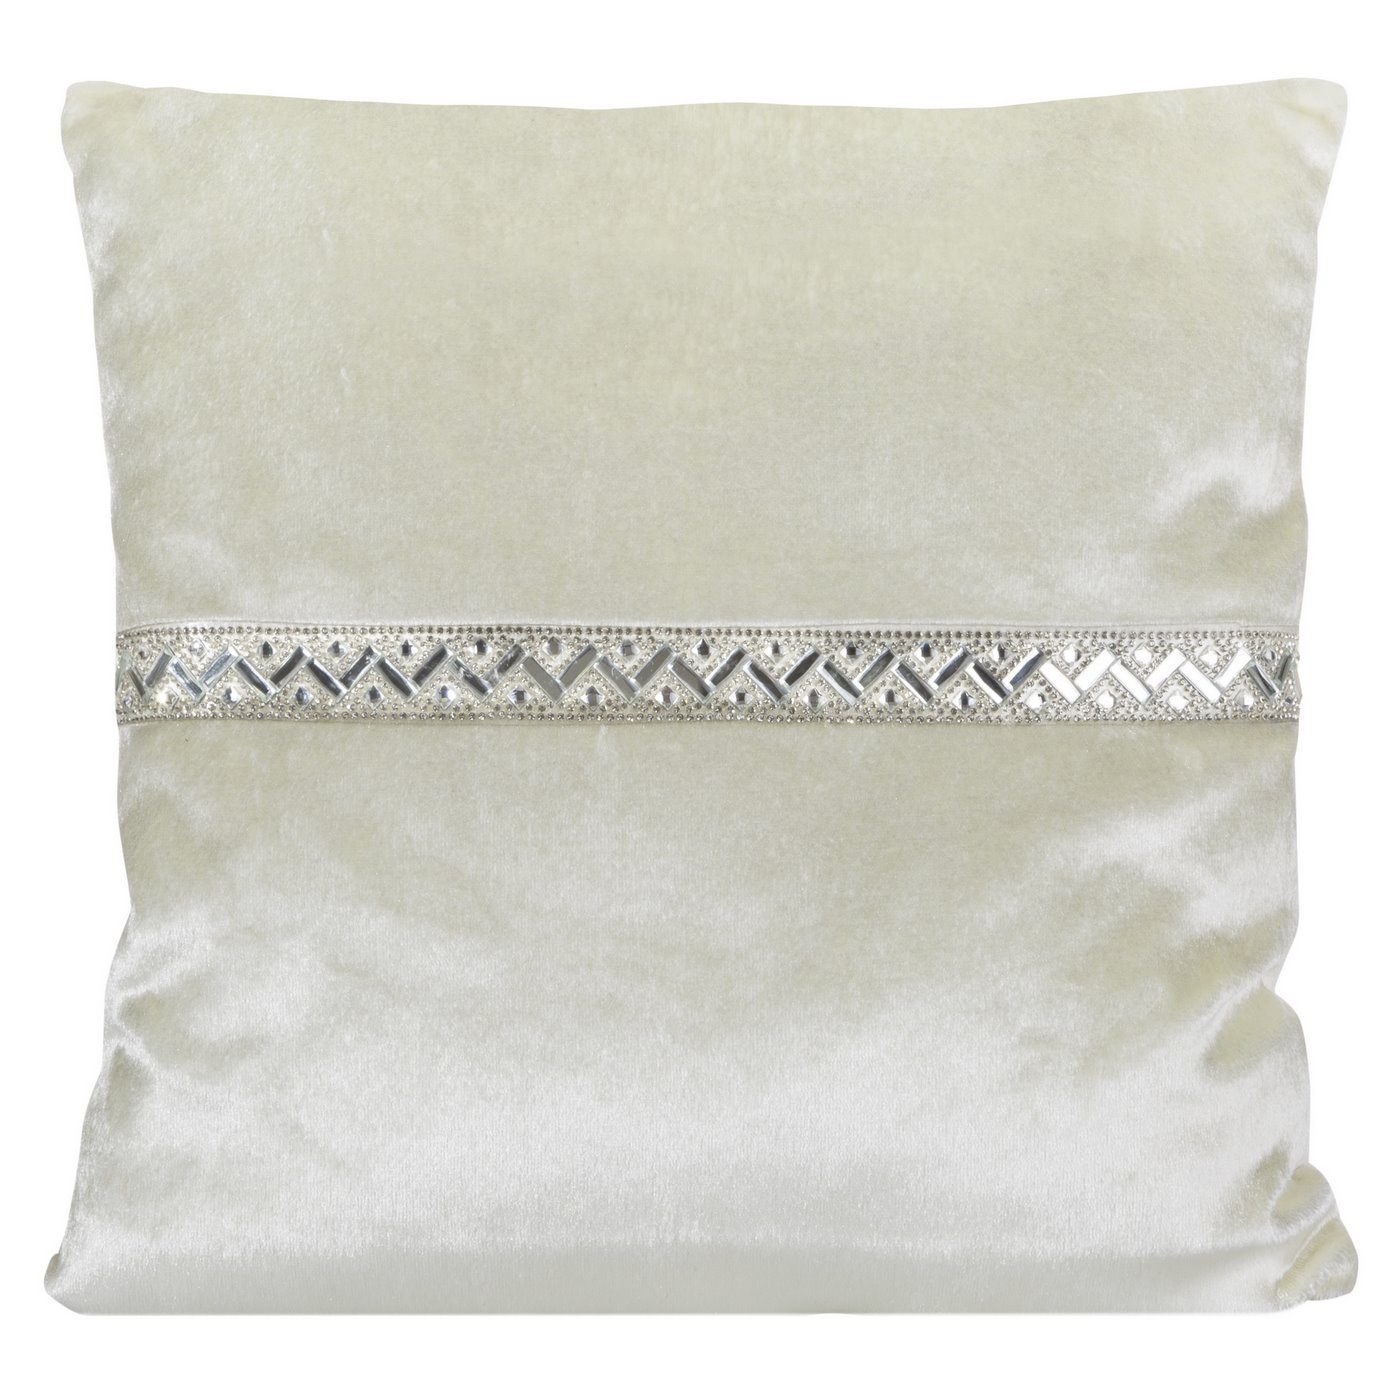 Poszewka na poduszkę kremowa ze srebrnym paskiem 40 x 40 cm 